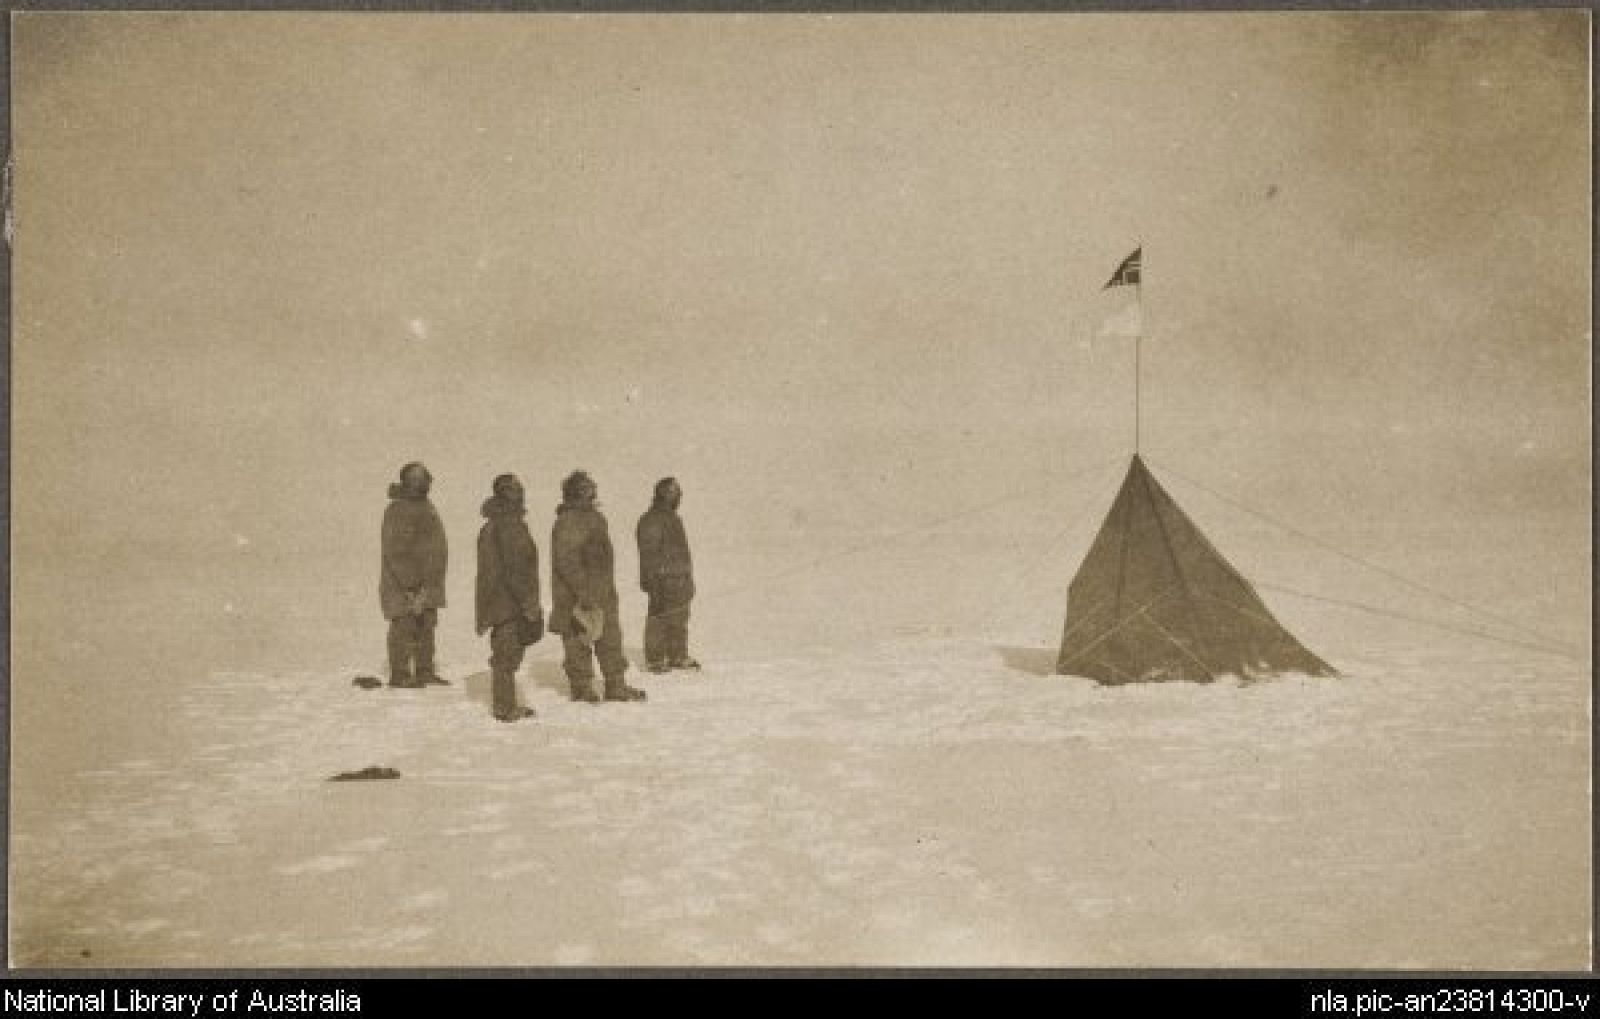 Un investigador noruego ha descubierto en la Biblioteca Nacional de Australia esta fotografía, la única original de la expedición de Roald Amundsen que llegó por vez primera al Polo Sur.